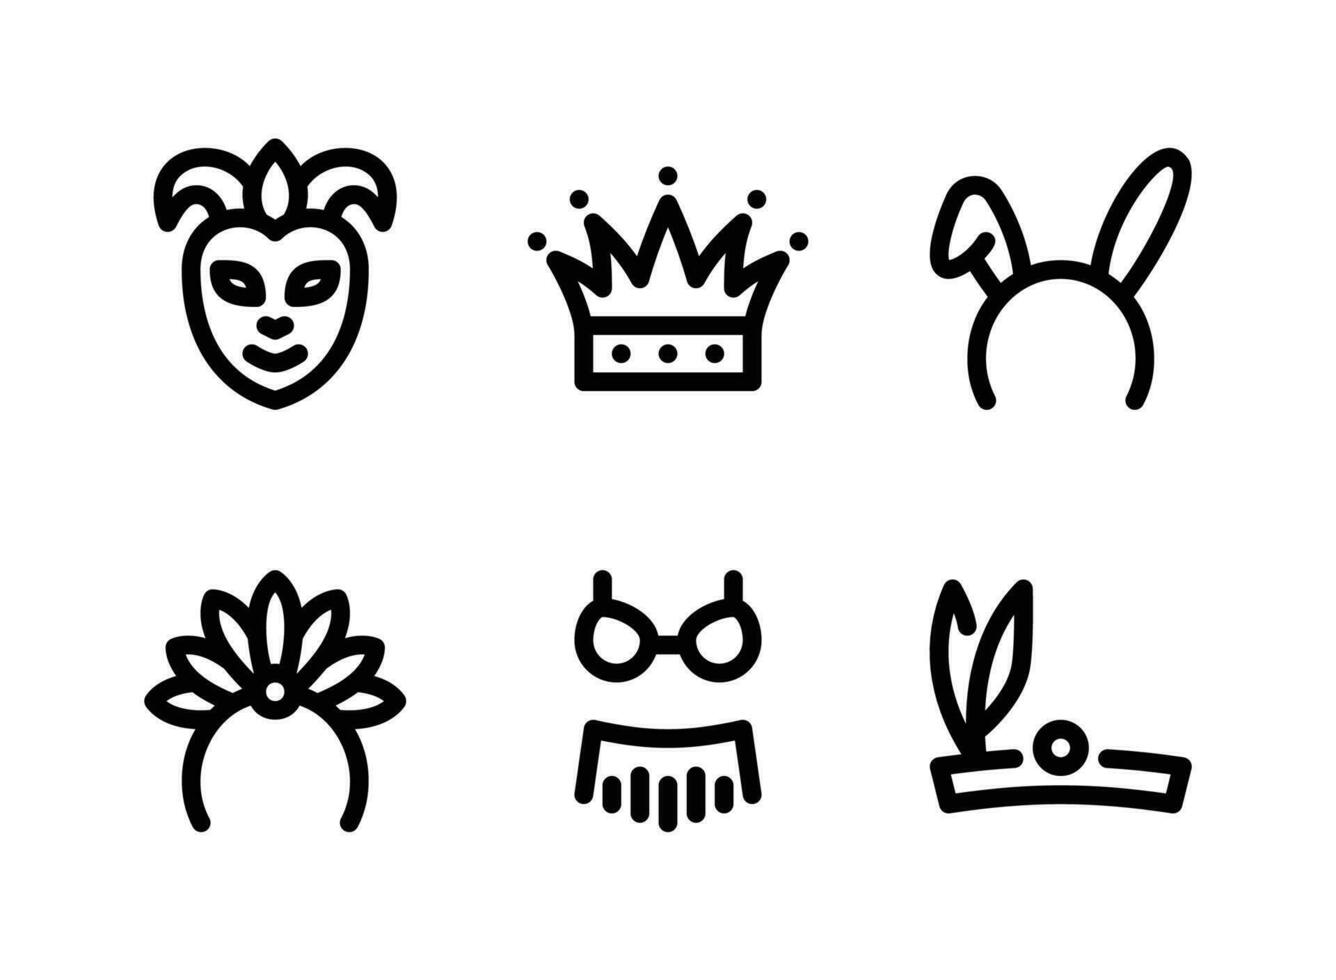 conjunto simples de ícones de linha de vetores do festival de mardi gras